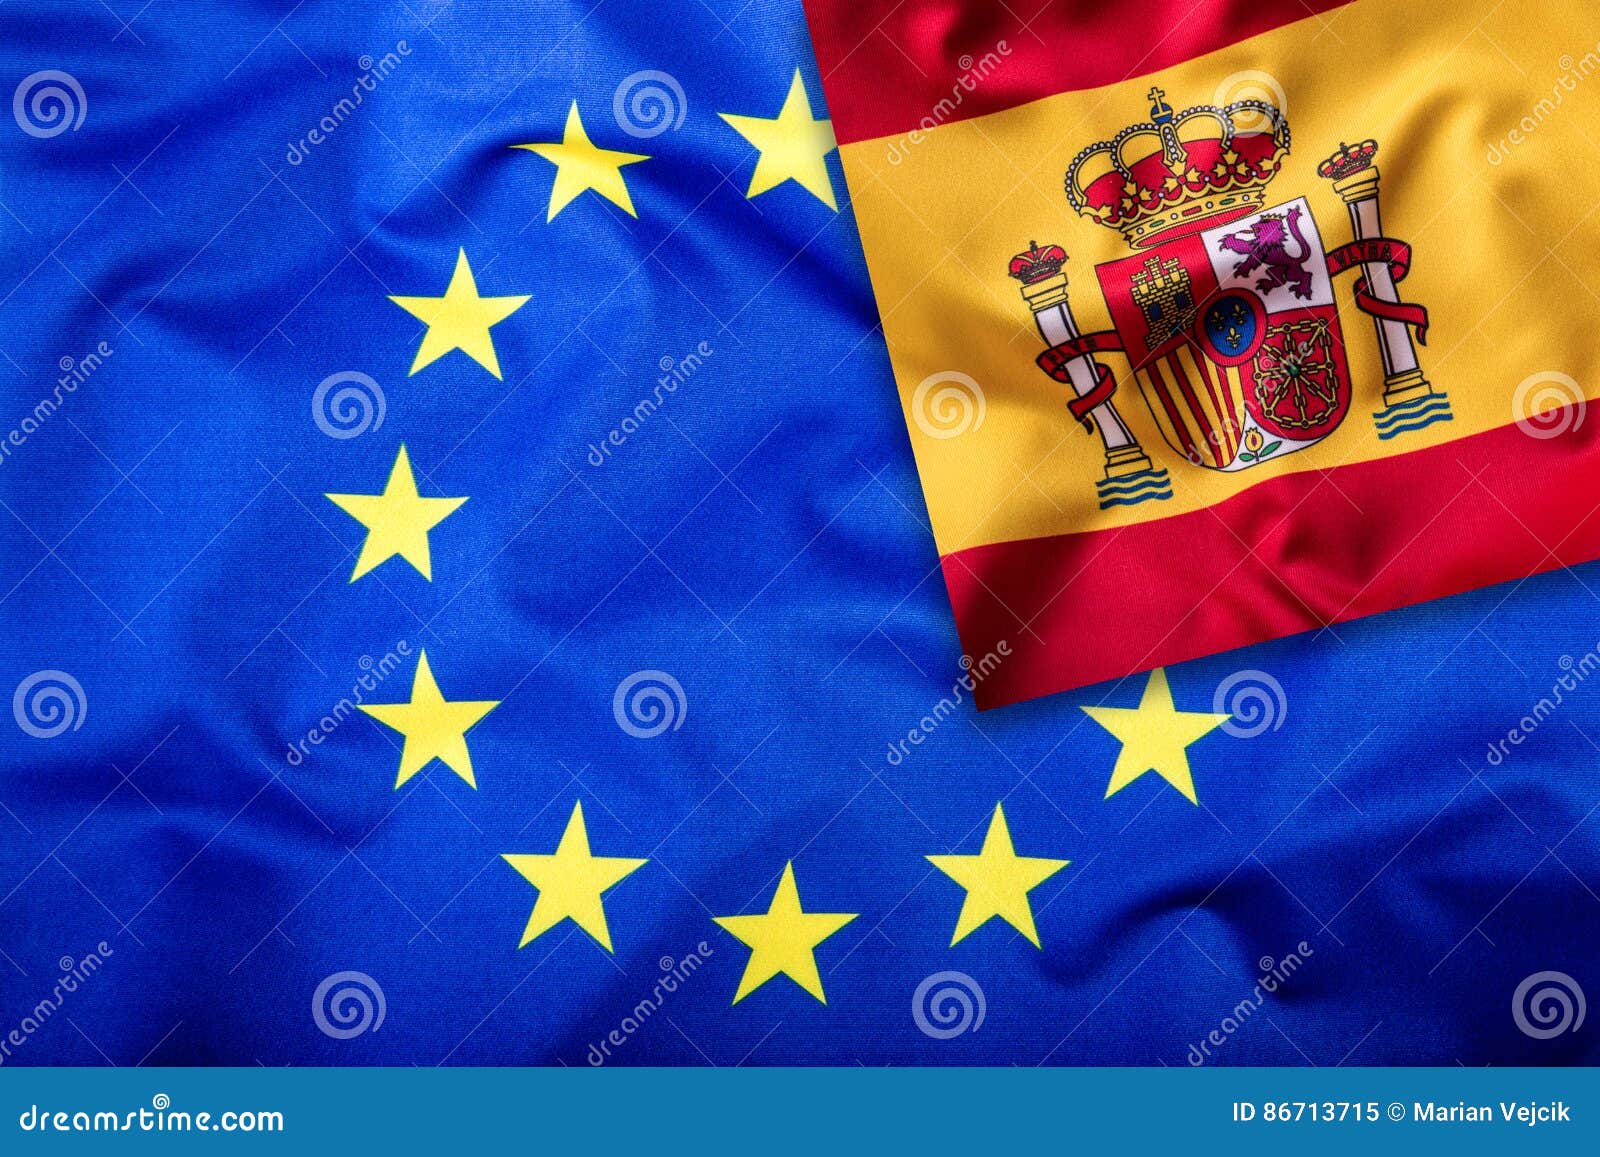 Flaggen Des Spaniens Und Der Europaischen Gemeinschaft Spanien Flagge Und Eu Flagge Flaggeninneresterne Weltflaggenkonzept Stockbild Bild Von Flaggen Weltflaggenkonzept